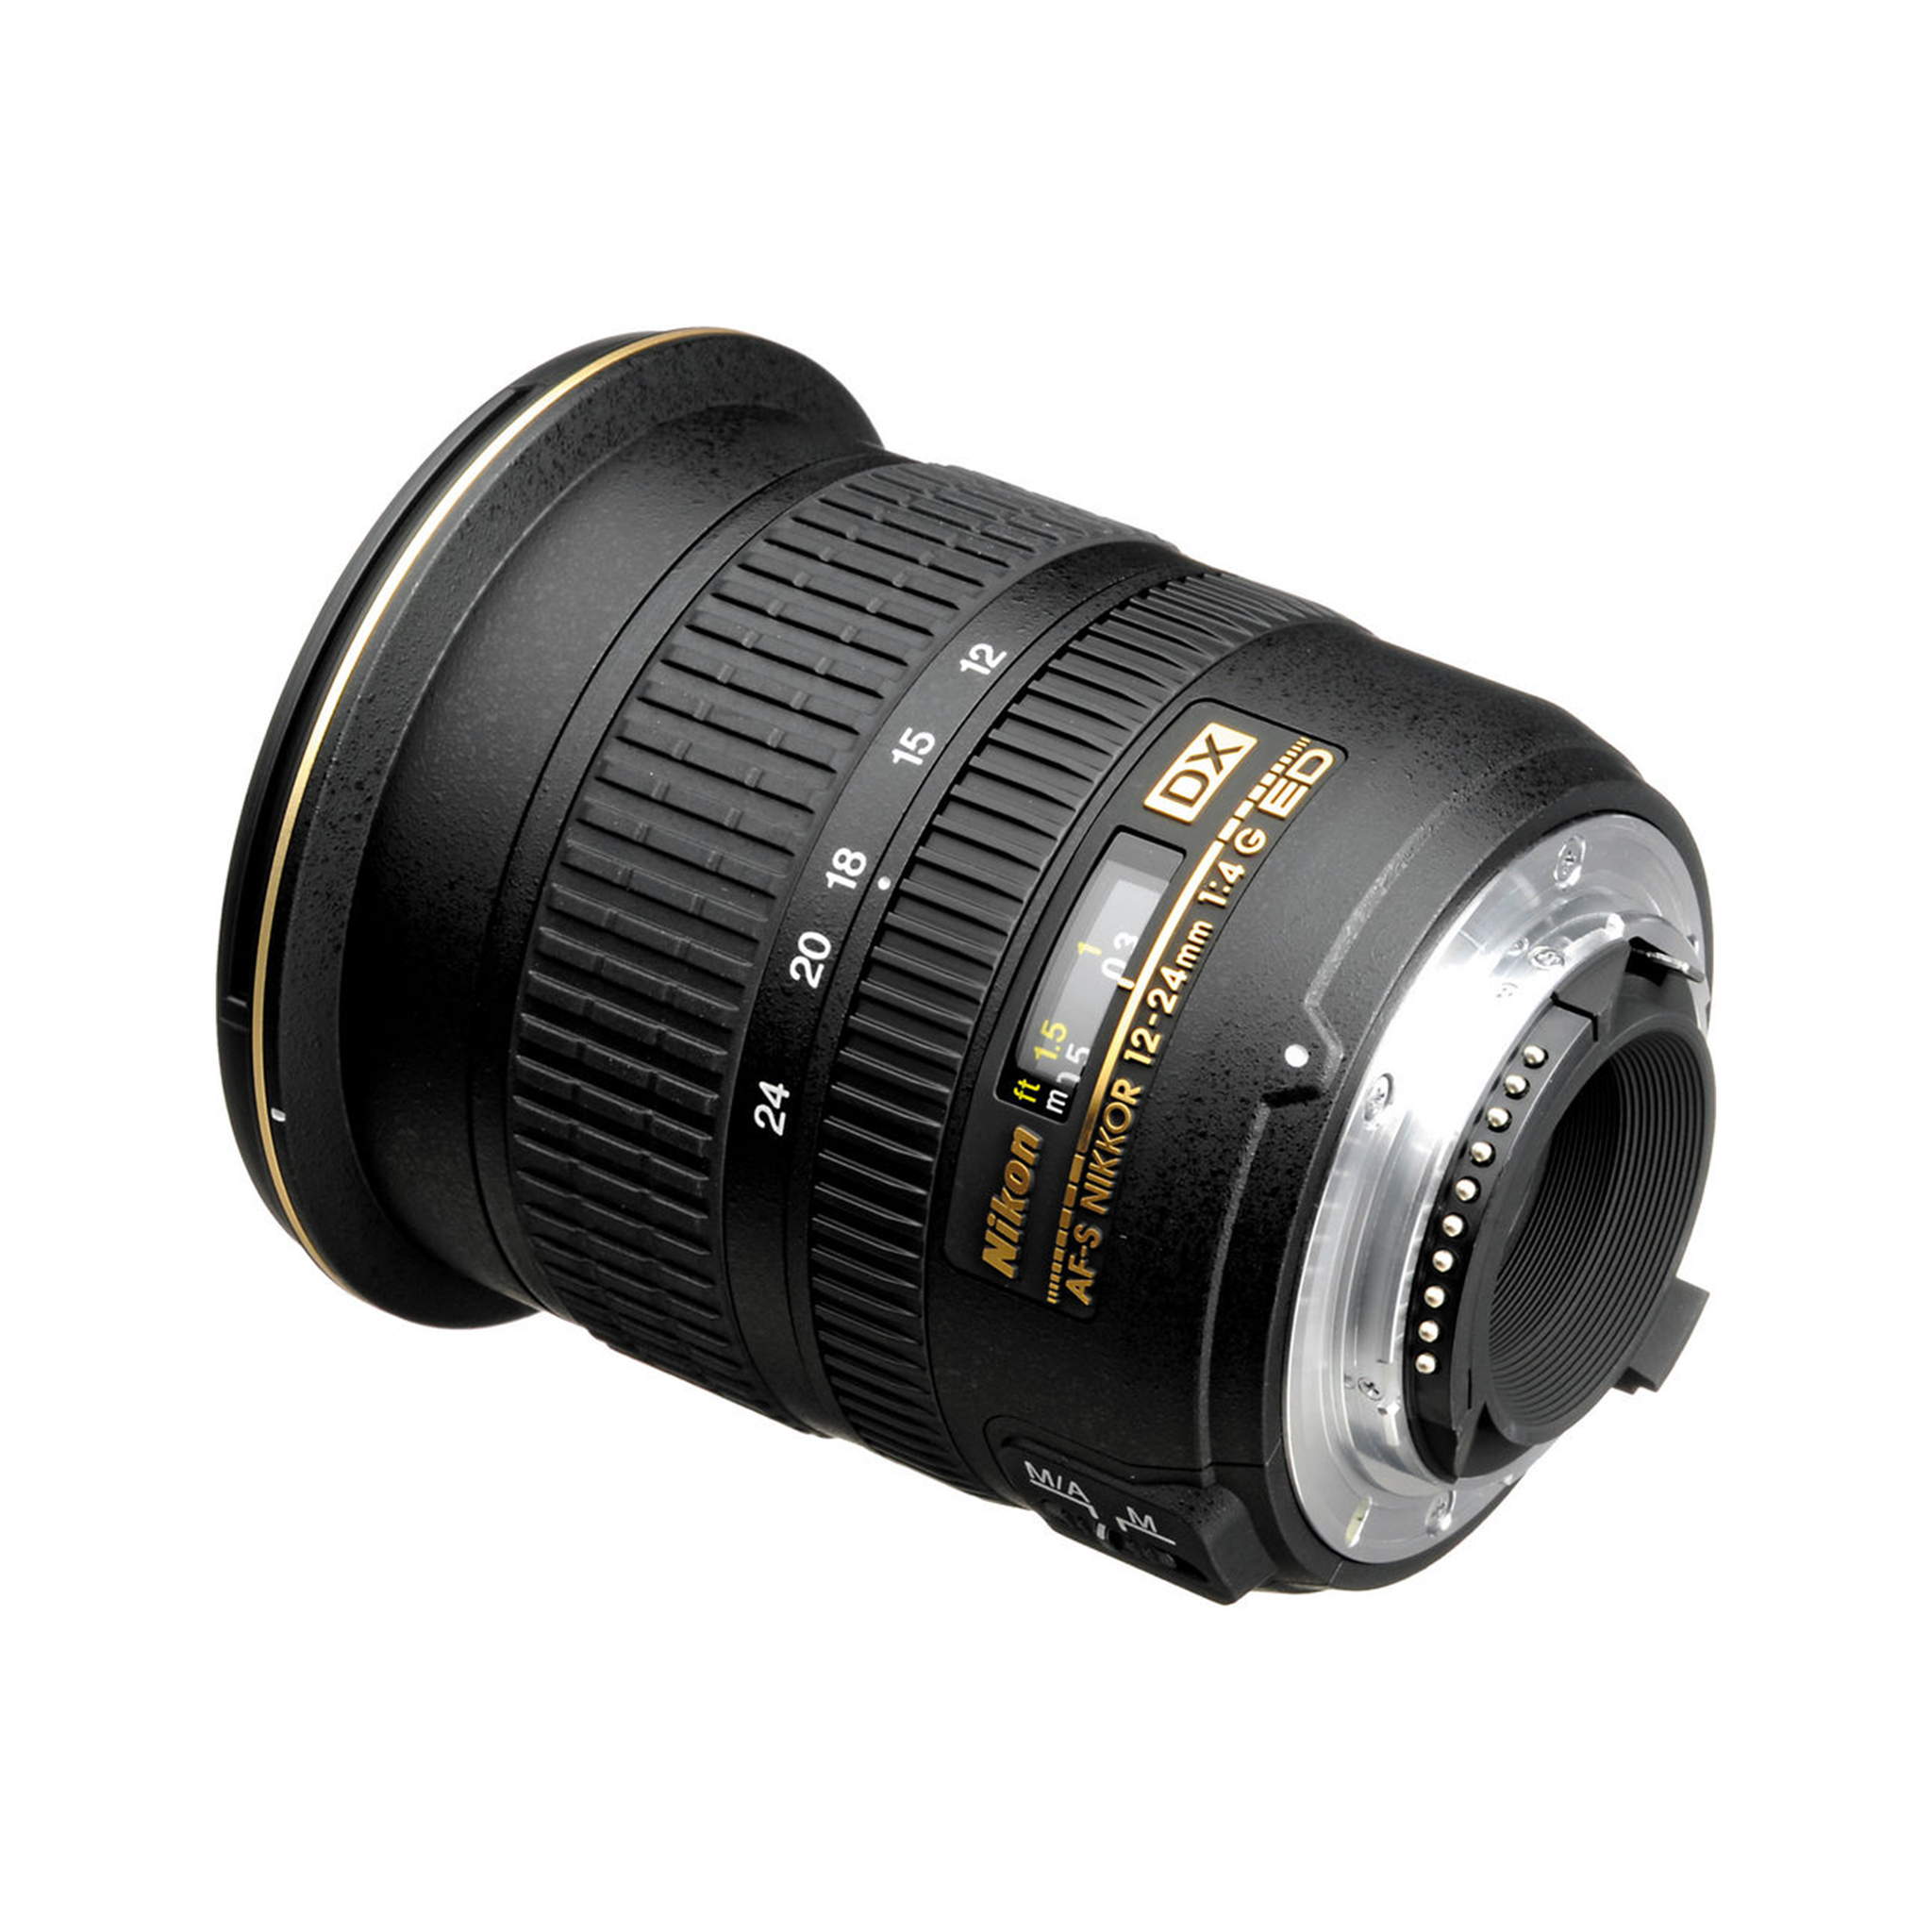 Nikon AF-S DX-NIKKOR 12-24mm f/4G IF-ED Lens-Camera Lenses-futuromic